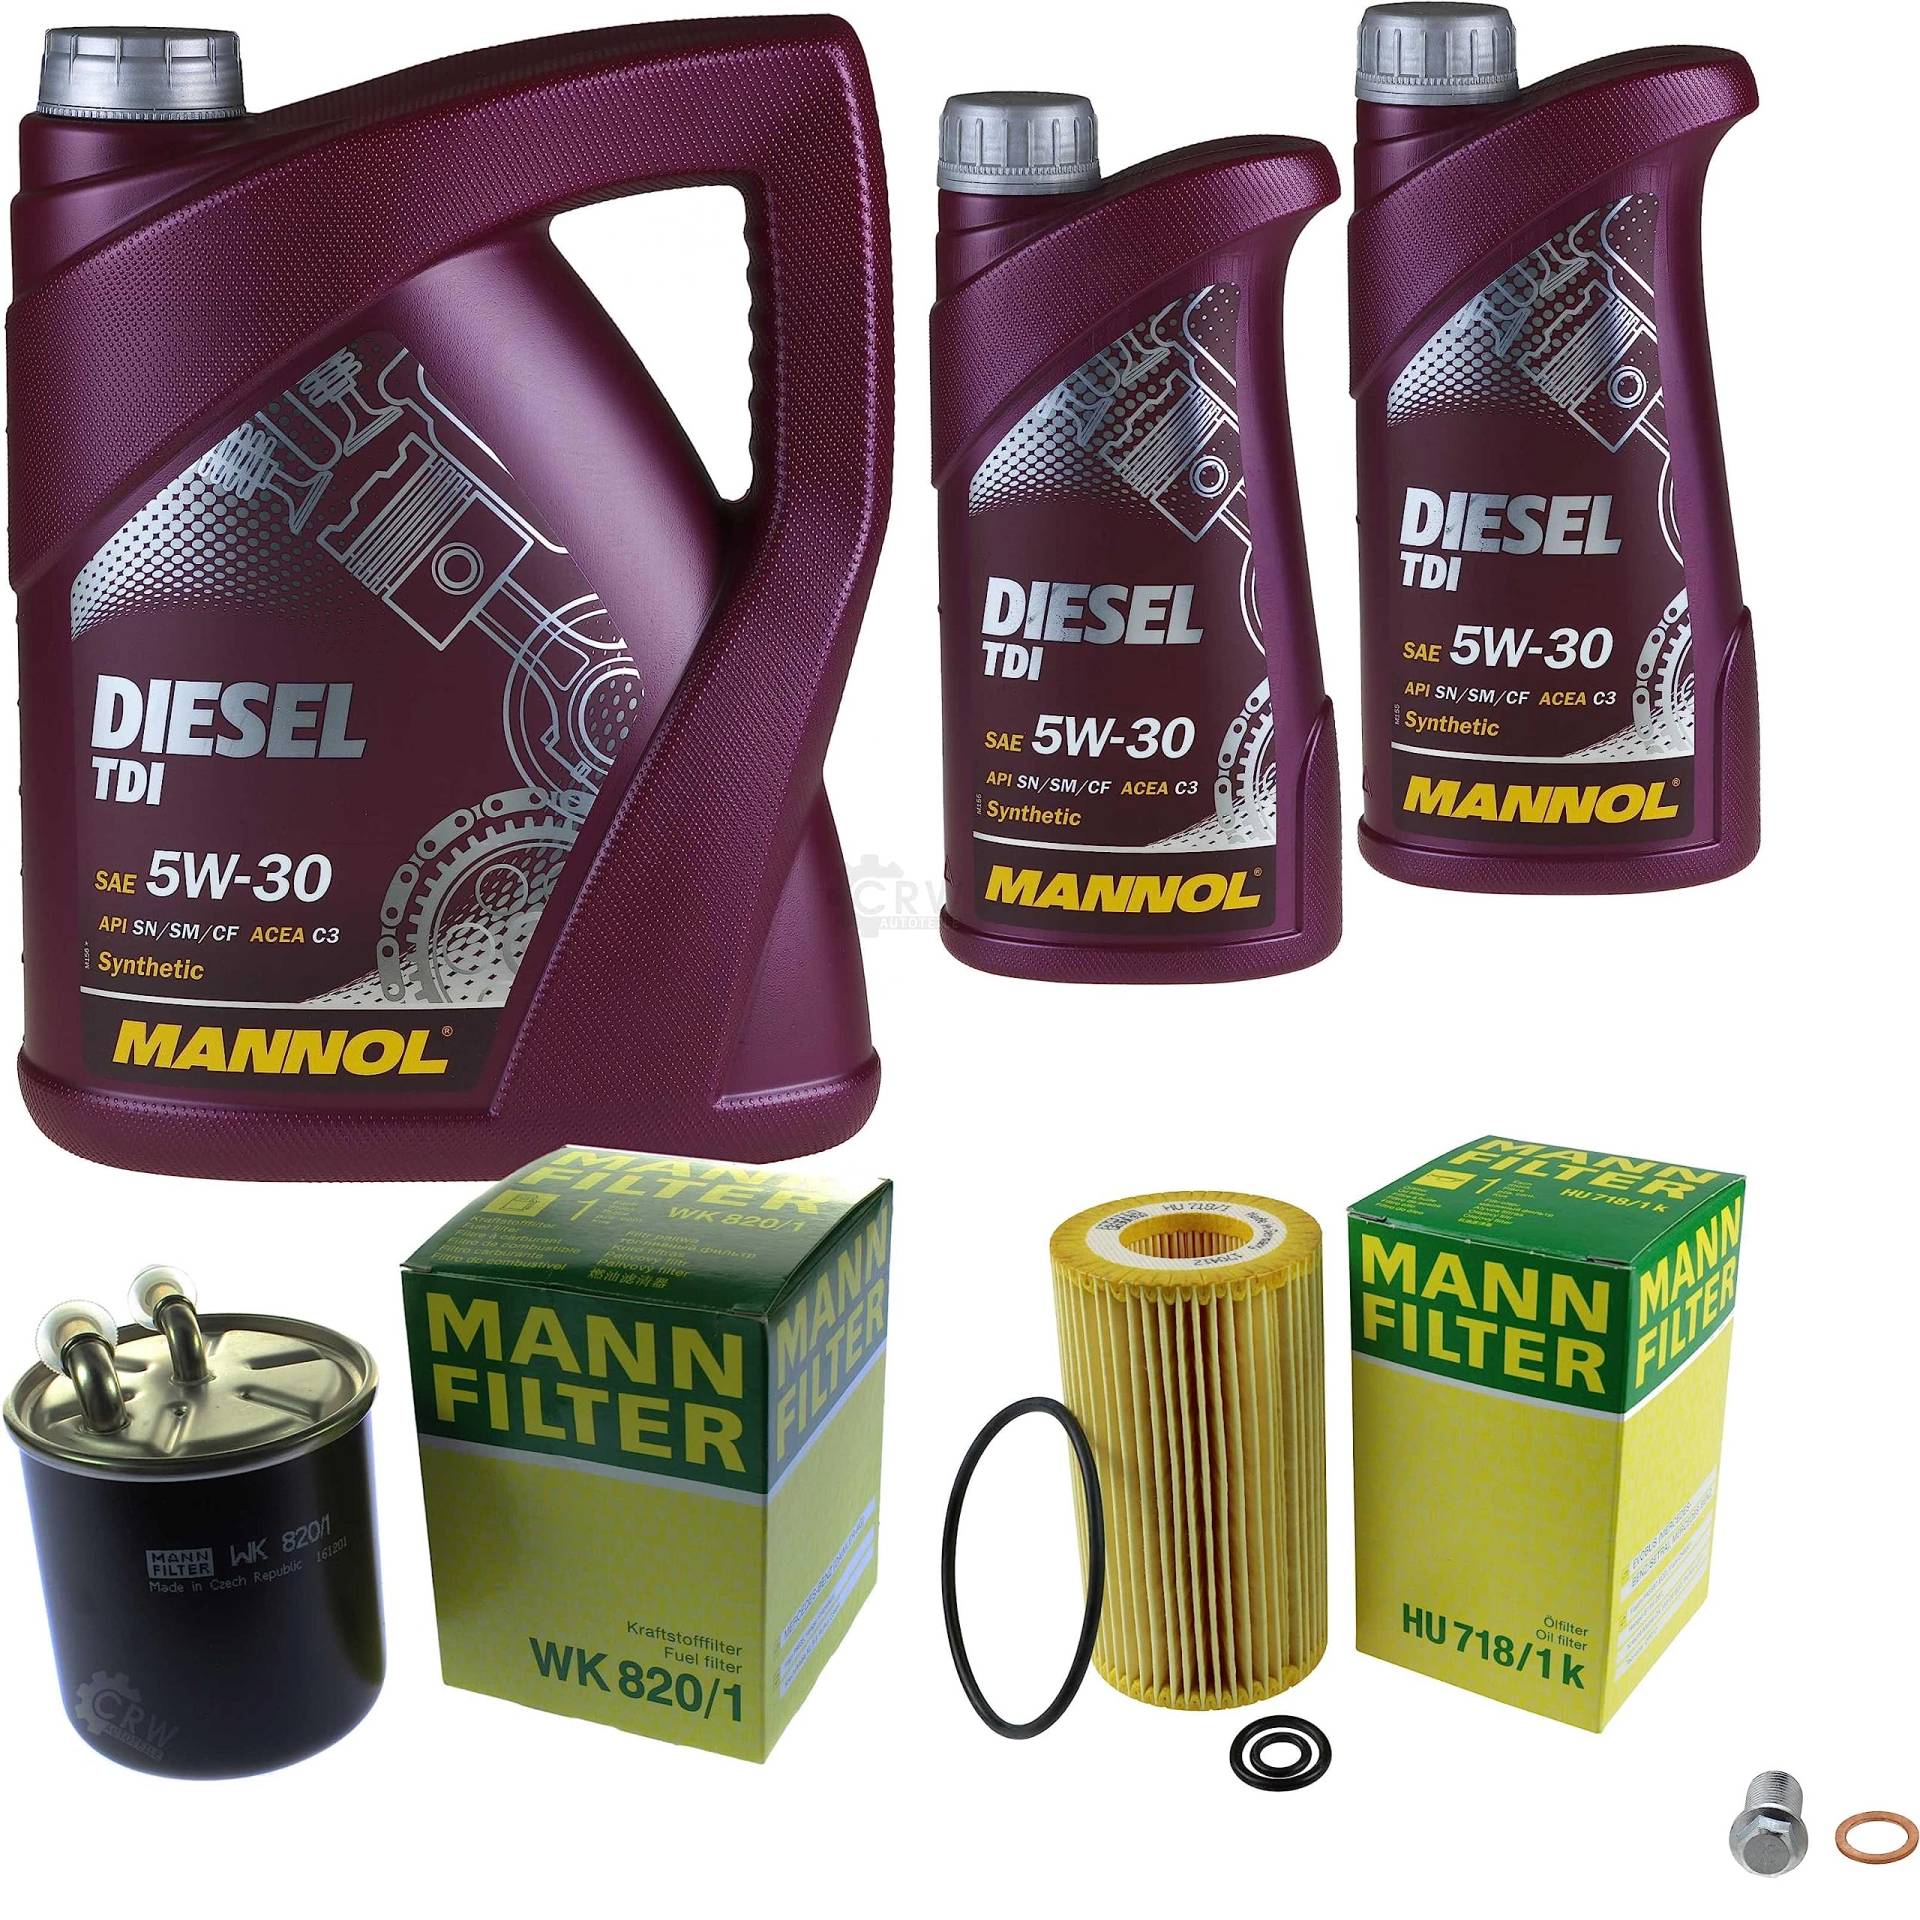 EISENFELS Filter Set Inspektionspaket erstellt mit 7 L Motoröl MANNOL Diesel TDI 5W-30, MANN-FILTER Ölfilter, Kraftstofffilter, Verschlussschraube von EISENFELS